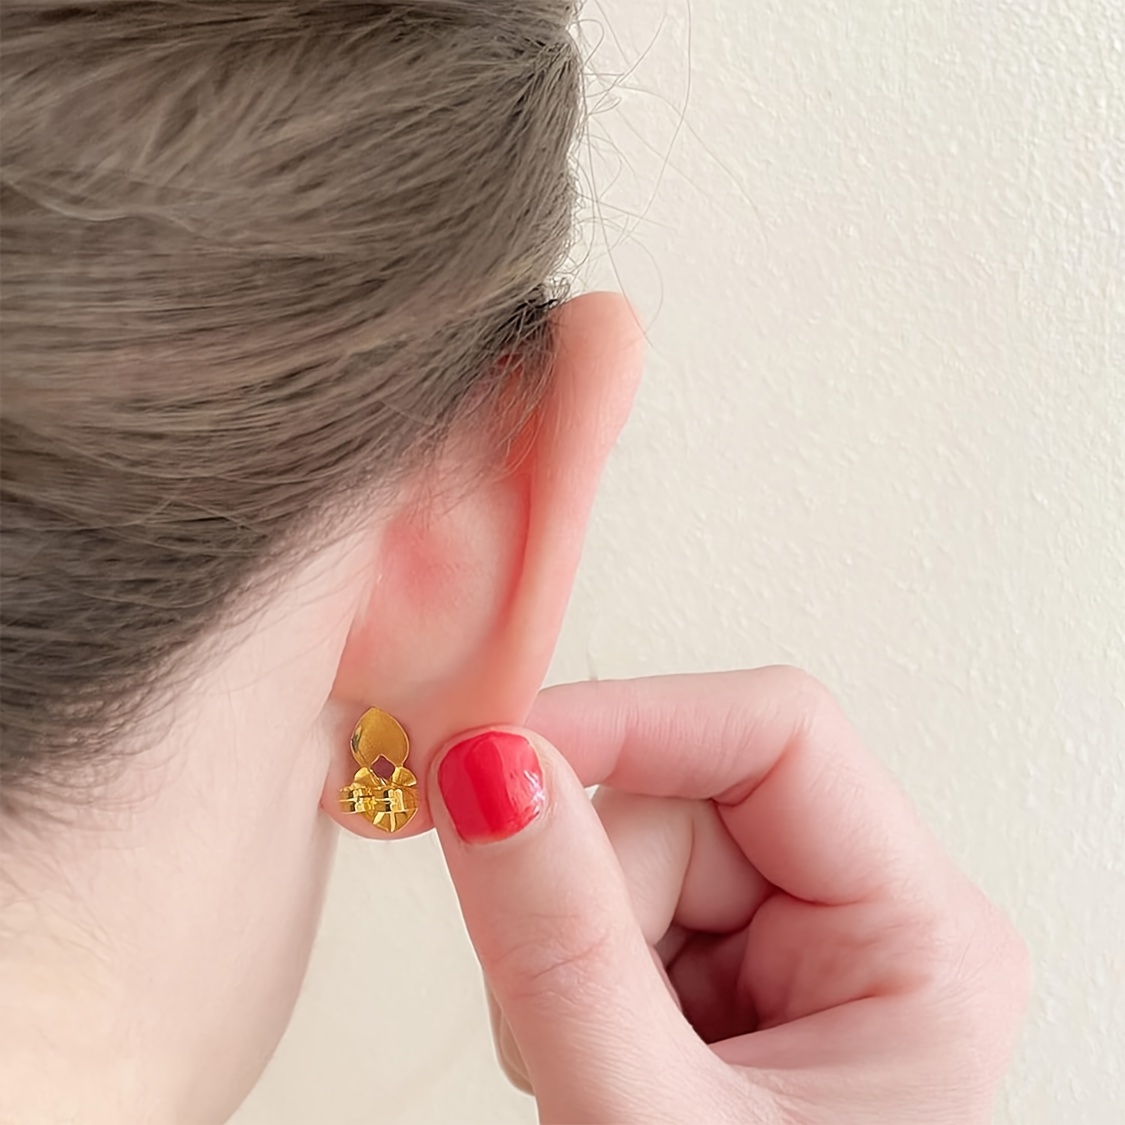 Earring Backs For Heavy Earrings Hypoallergenic - Temu